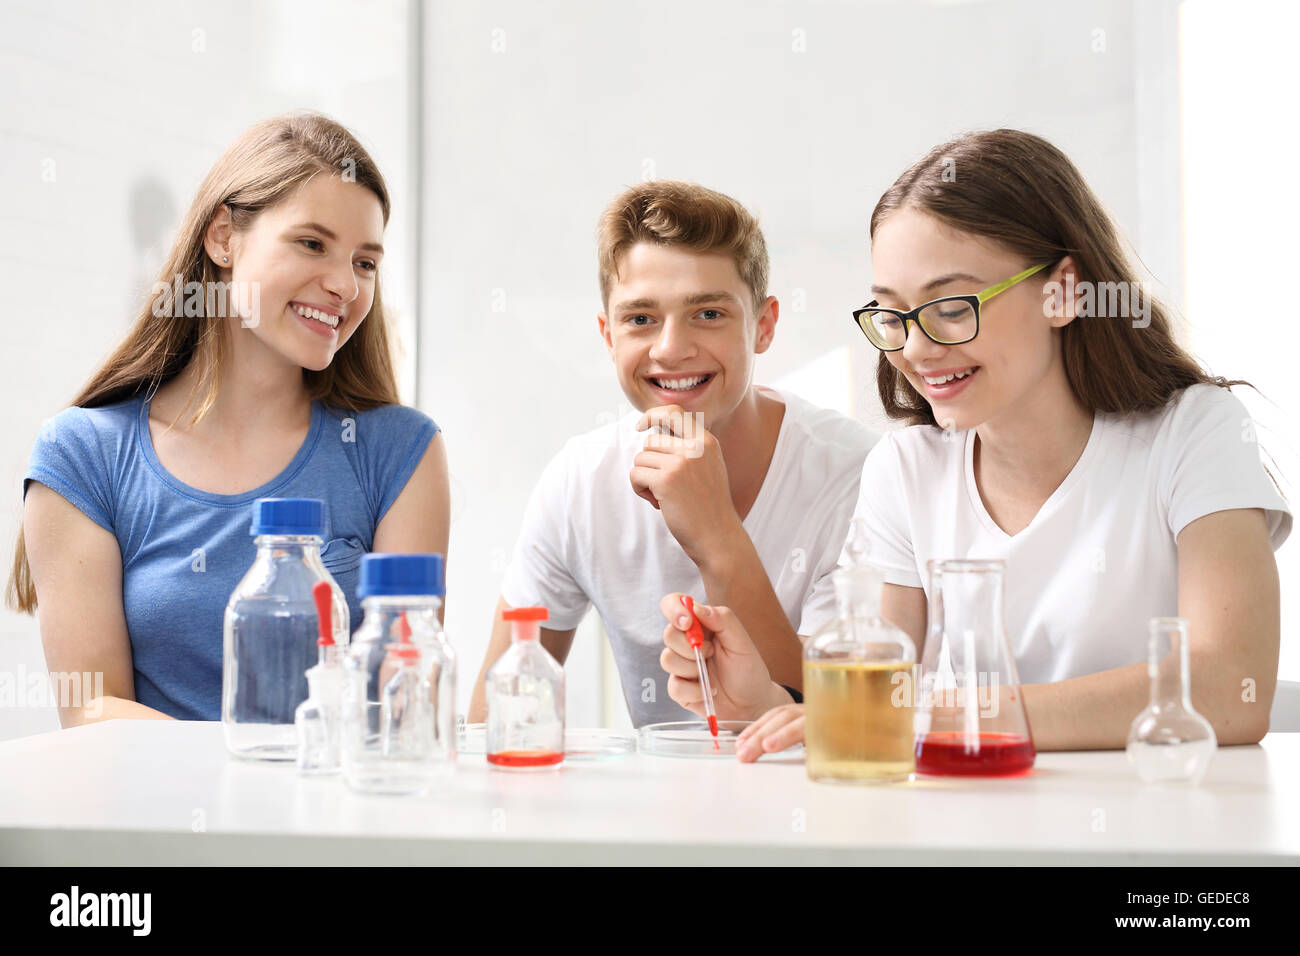 Lezione chimica, gli esperimenti di chimica Foto Stock